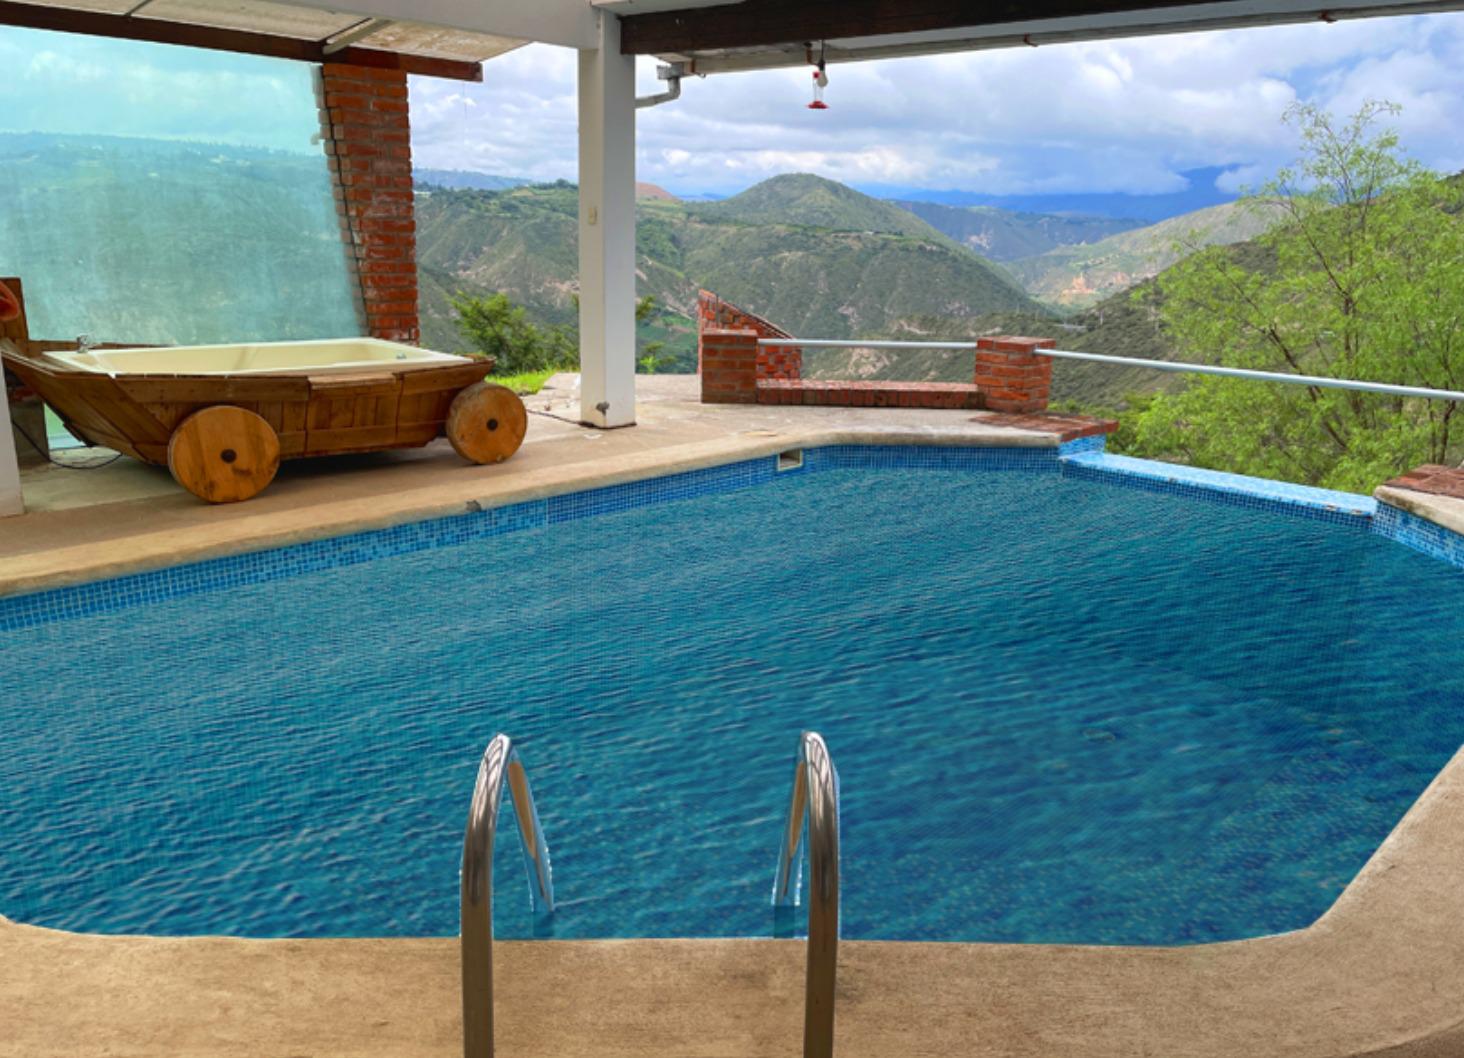 Quinta con reserva ecológica, casa un solo andar, piscina a 5 km de Guayllabamba